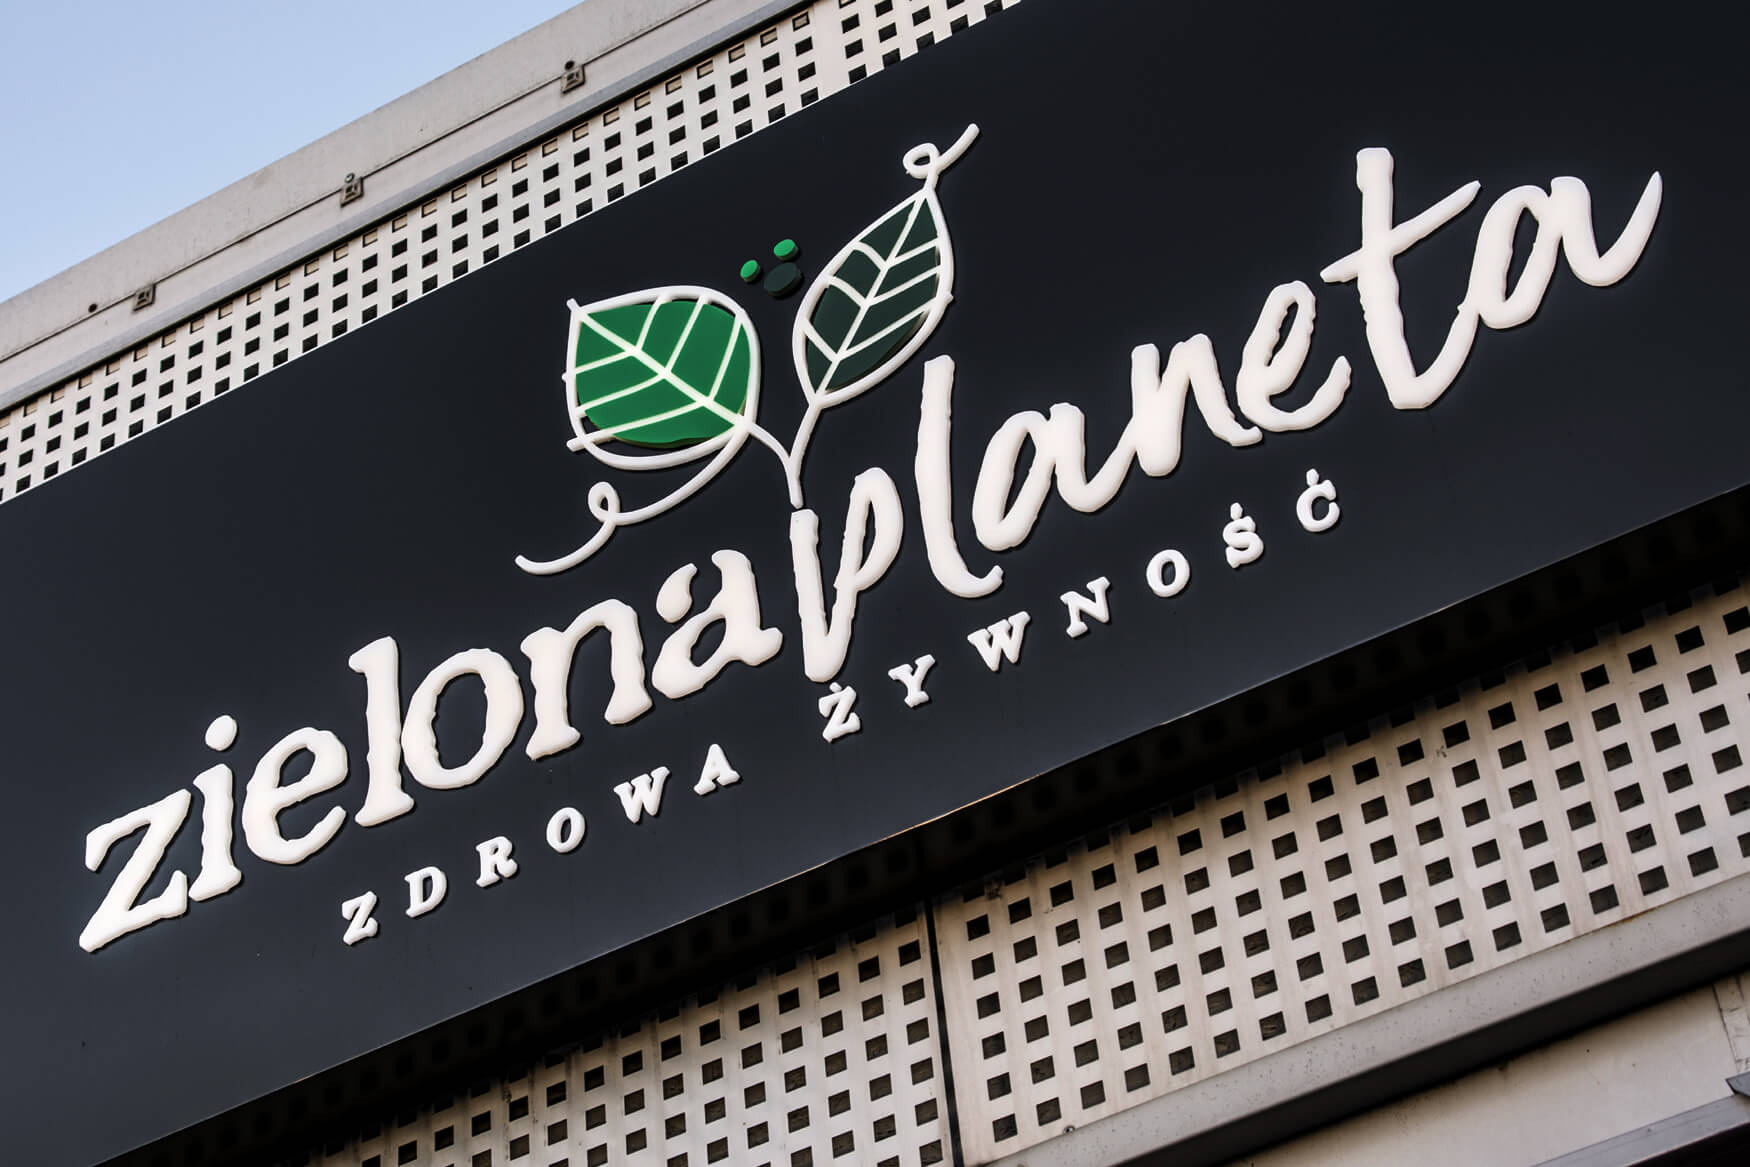 planeta verde - Green Planet - caja de luz publicitaria luminosa con letras y logotipo espacial